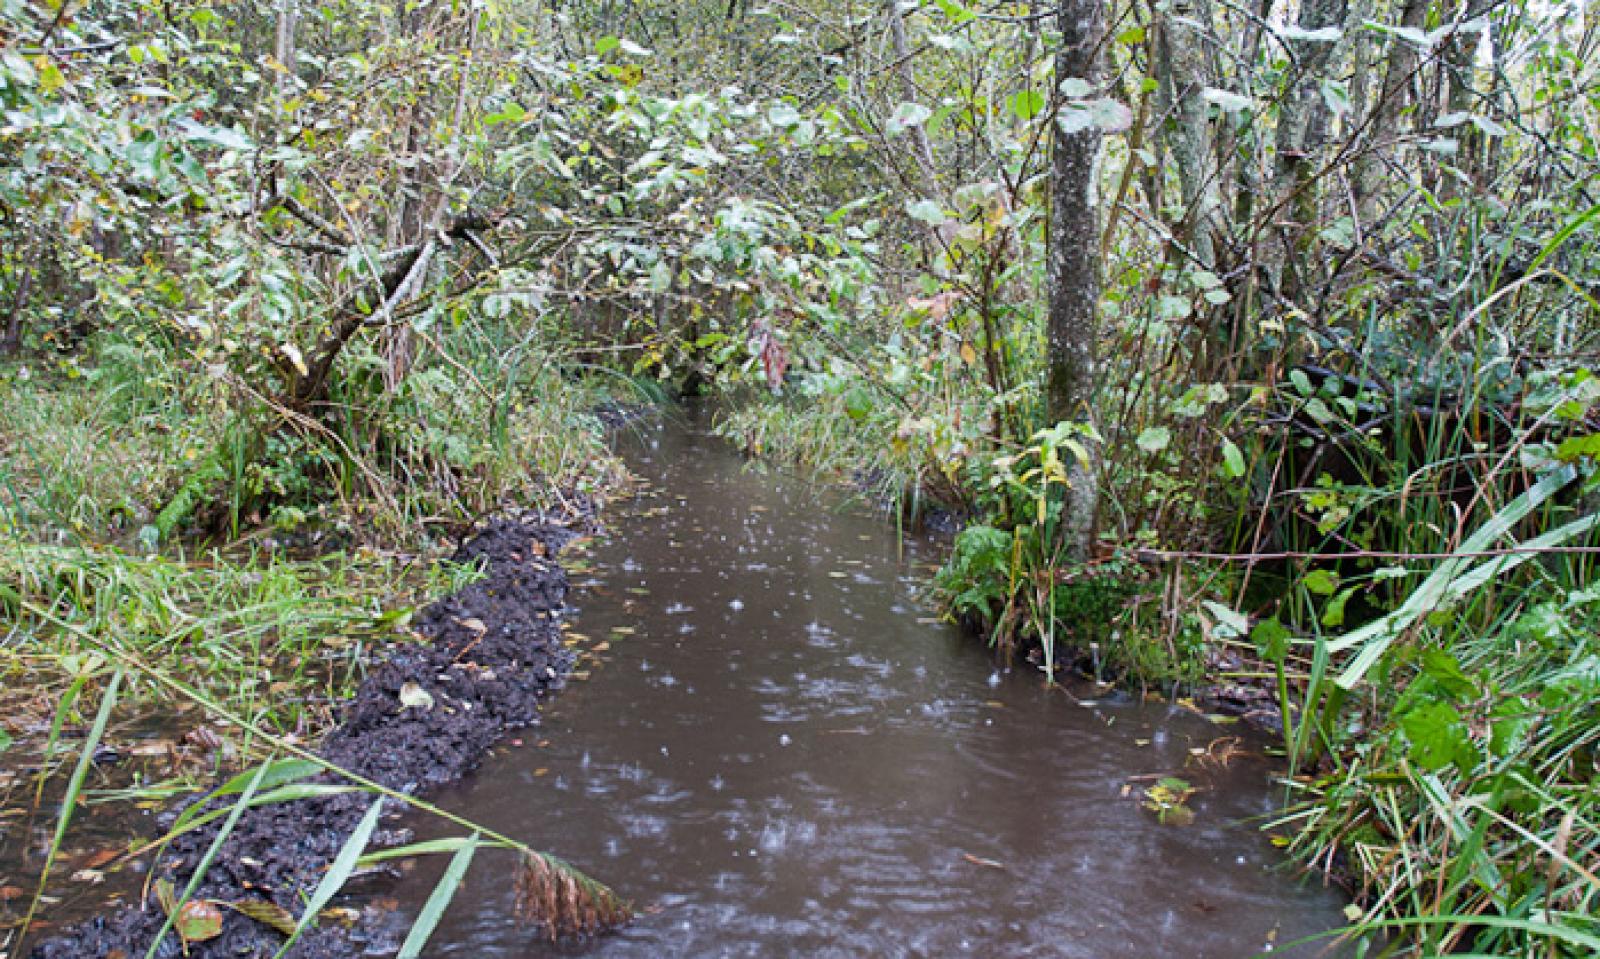 Kanal in einem Auenwald. Besonders gut zu sehen ist der Schlamm, der am linken Ufer abgebaut und angesammelt wurde (© Christof Angst)